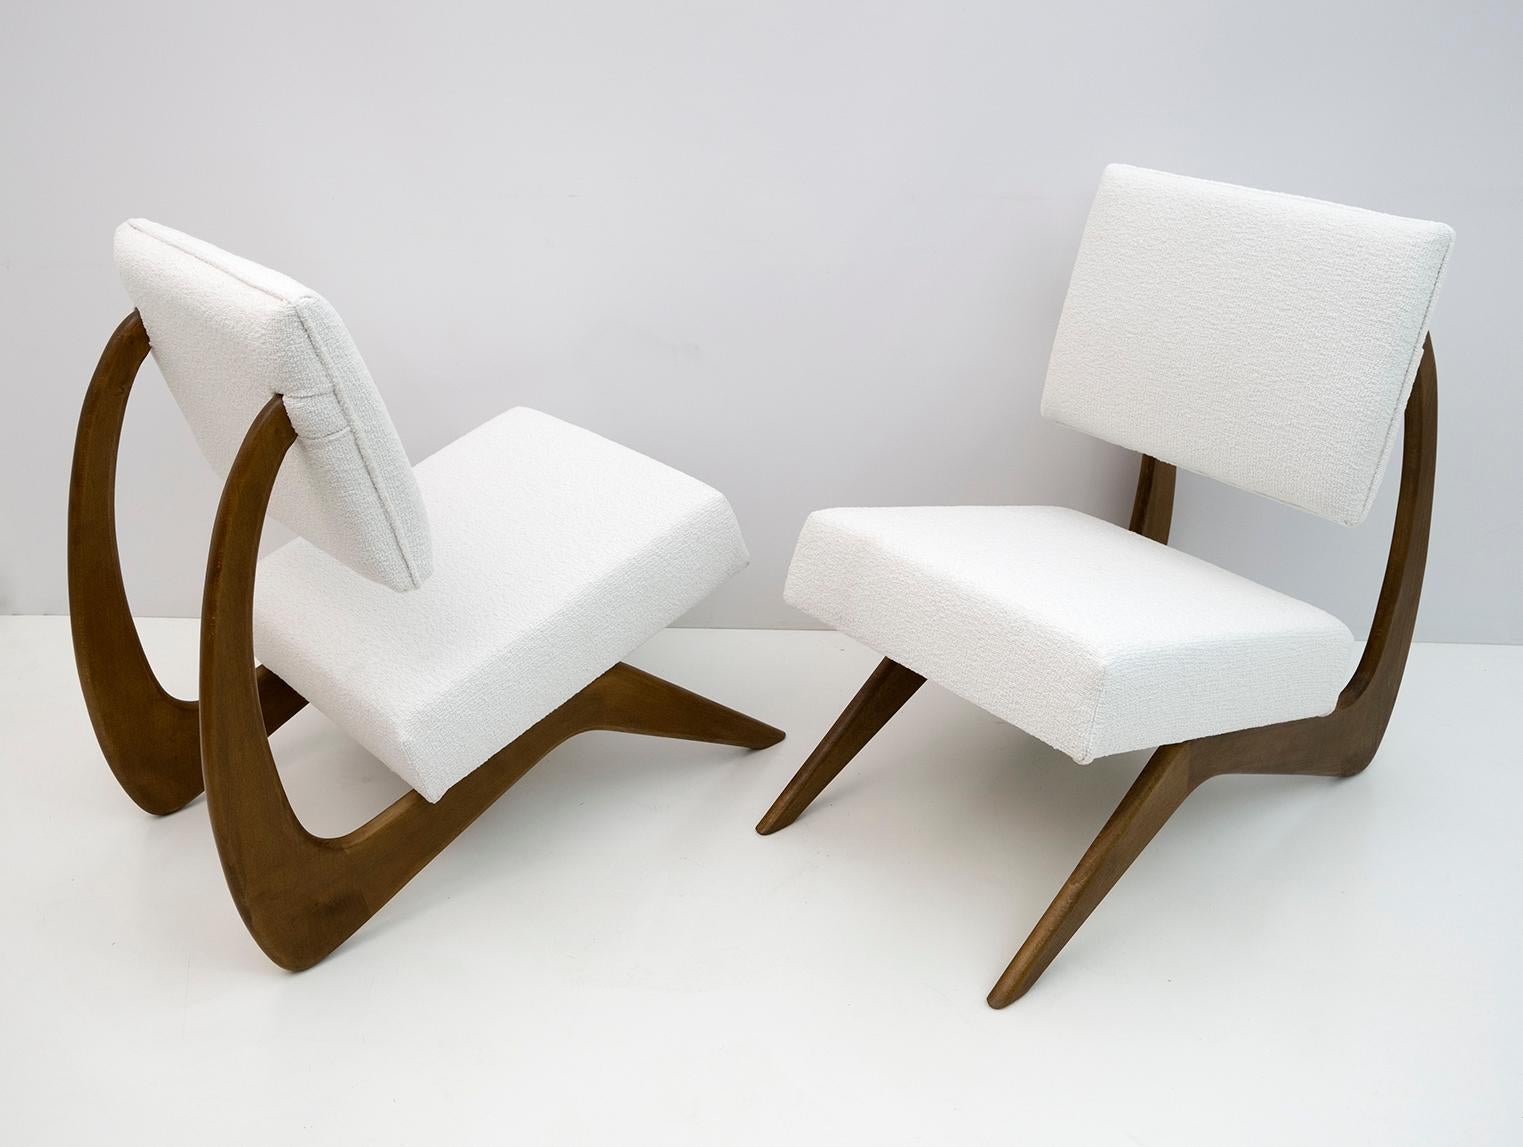 Paire de fauteuils conçus par le designer américain Adrian Pearsall. La structure de ces chaises de salon de cocktail est faite de bois de noyer dans une belle forme incurvée et tapissée de tissu chenille blanc. Les fauteuils ont été restaurés et